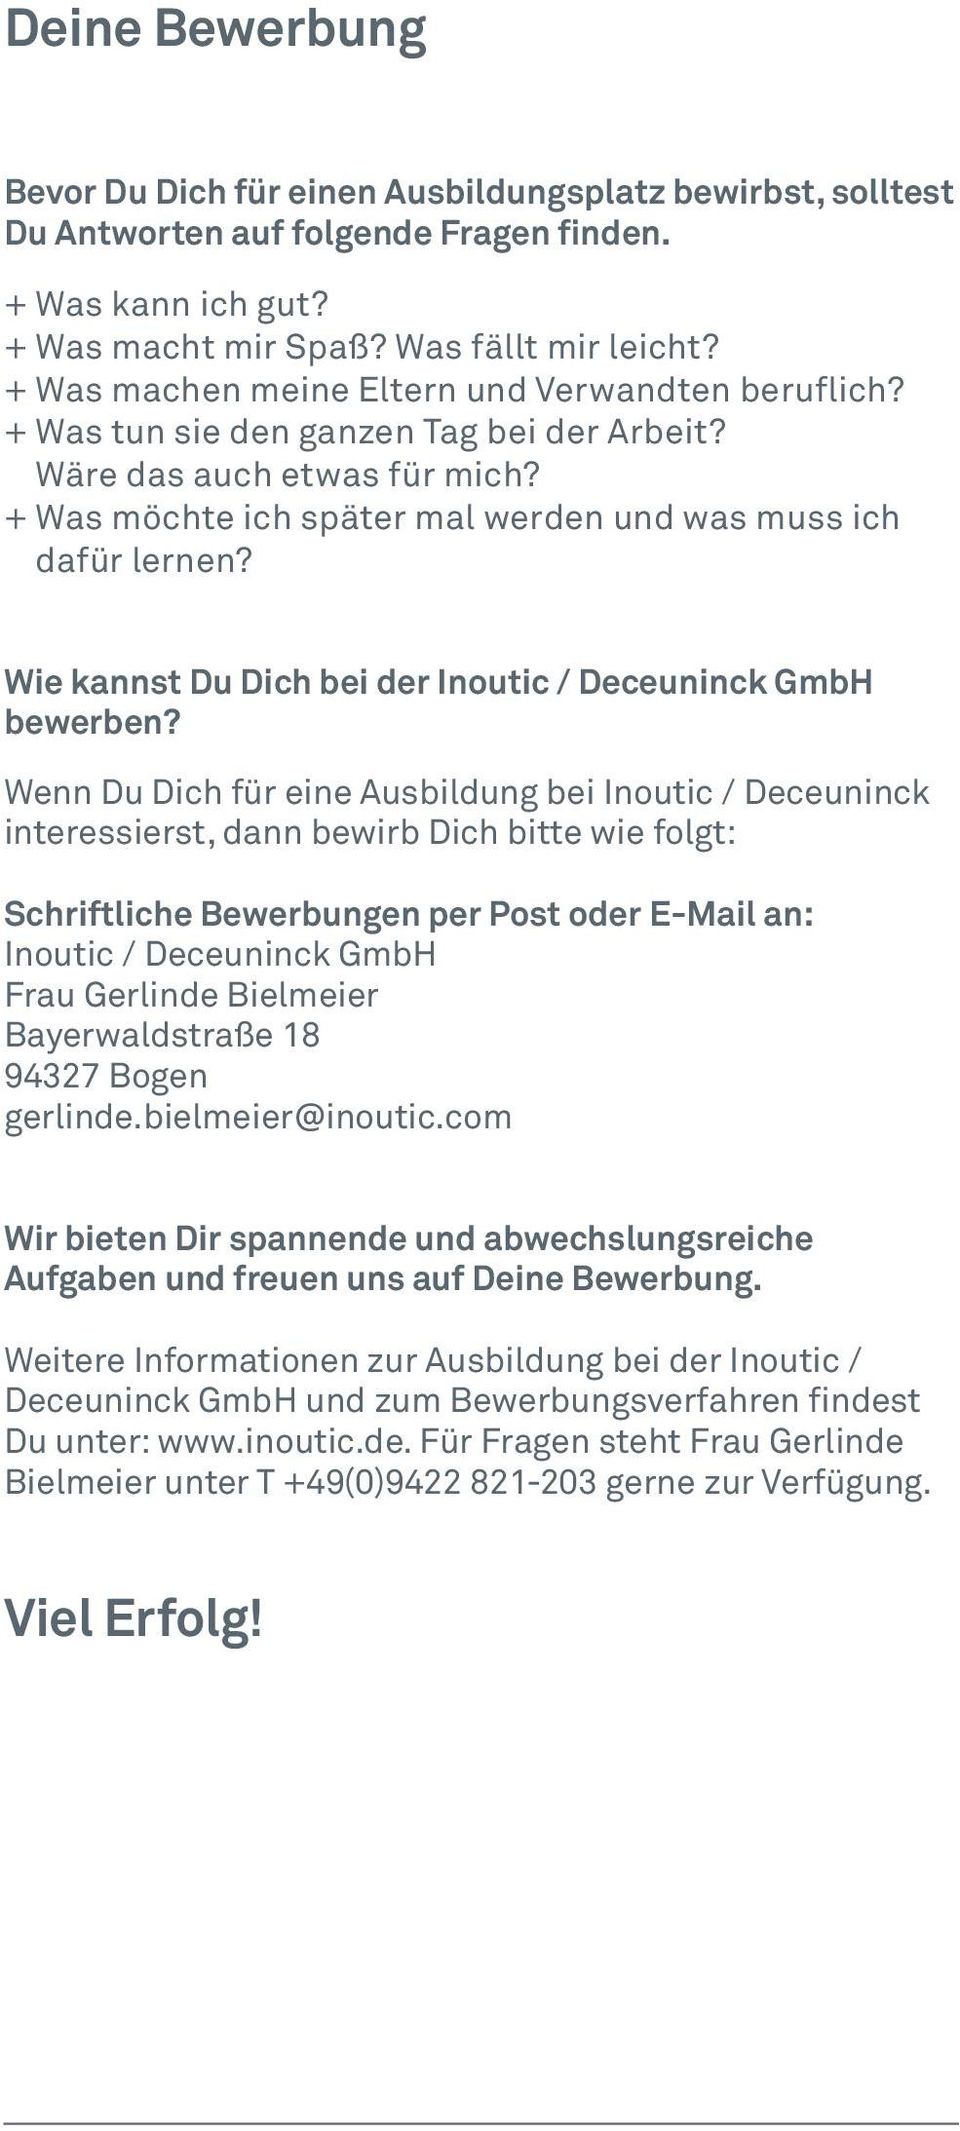 Wie kannst Du Dich bei der Inoutic / Deceuninck GmbH bewerben?